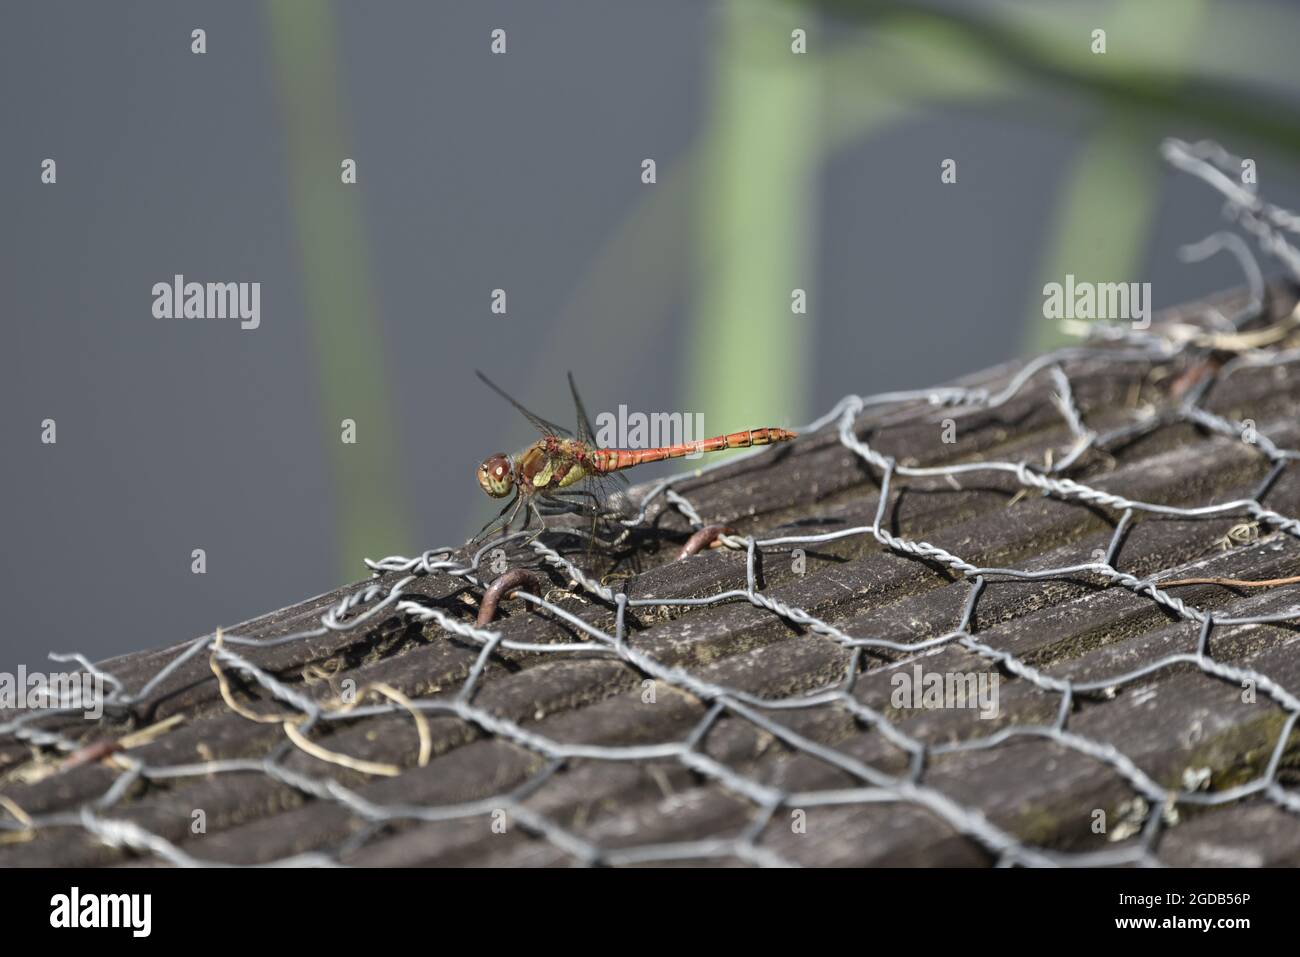 Primer plano del lado izquierdo de la libélula común masculina (Sympetrum striolatum) encaramado en el borde de un lago en verano en Gales, con cuerpo entero en foco Foto de stock